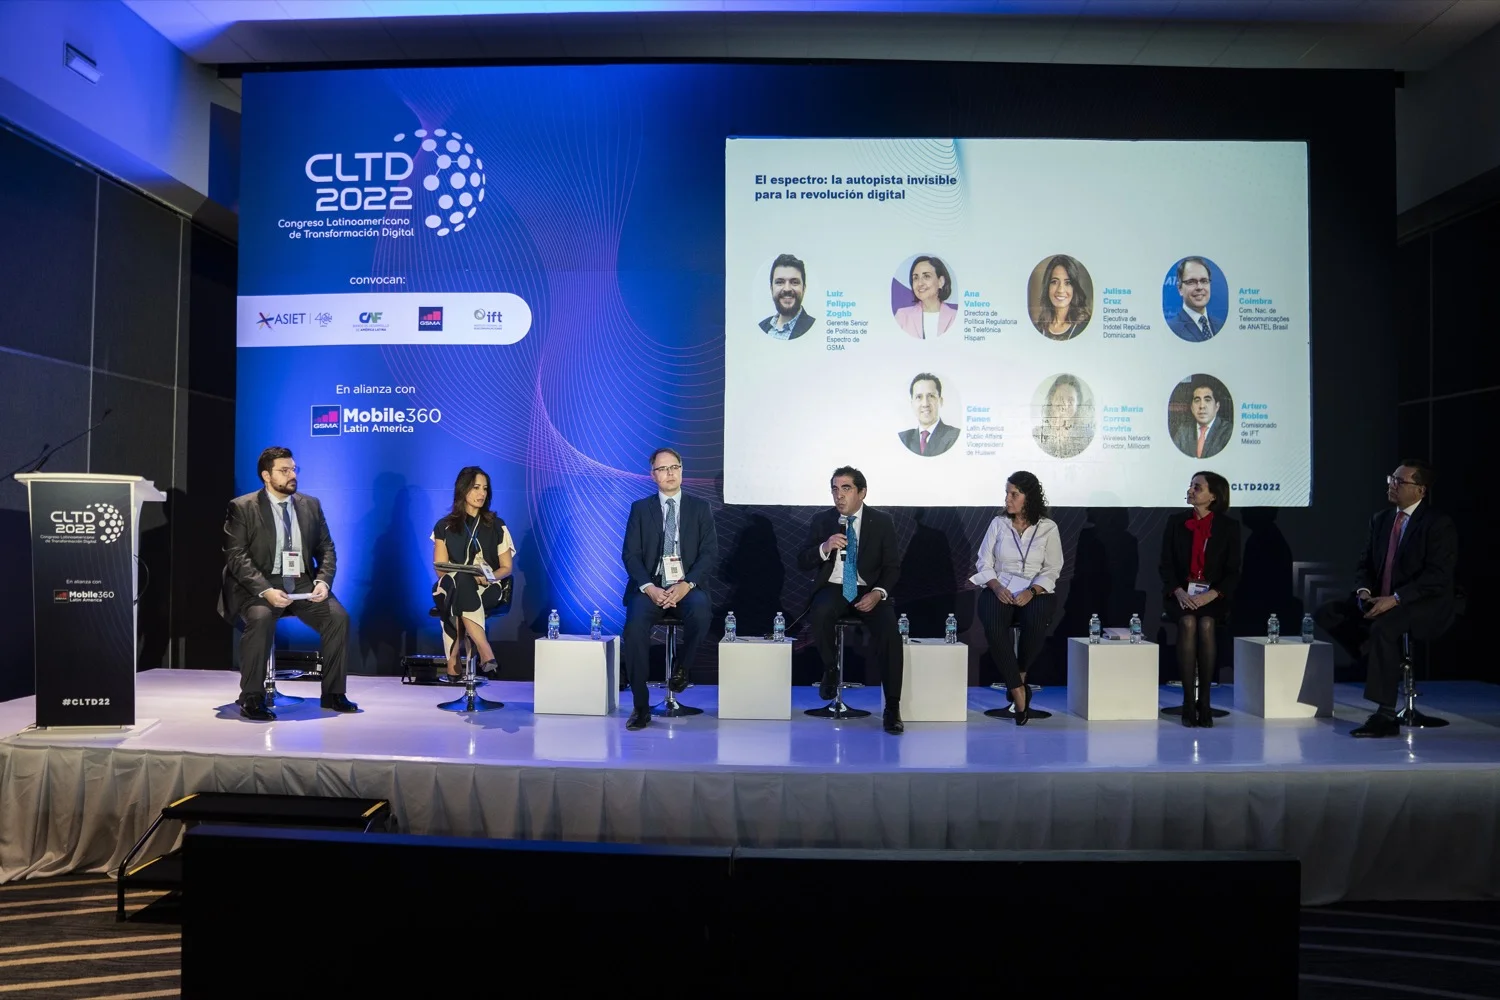 Telefónica contribuye con la inclusión digital en Hispanoamérica